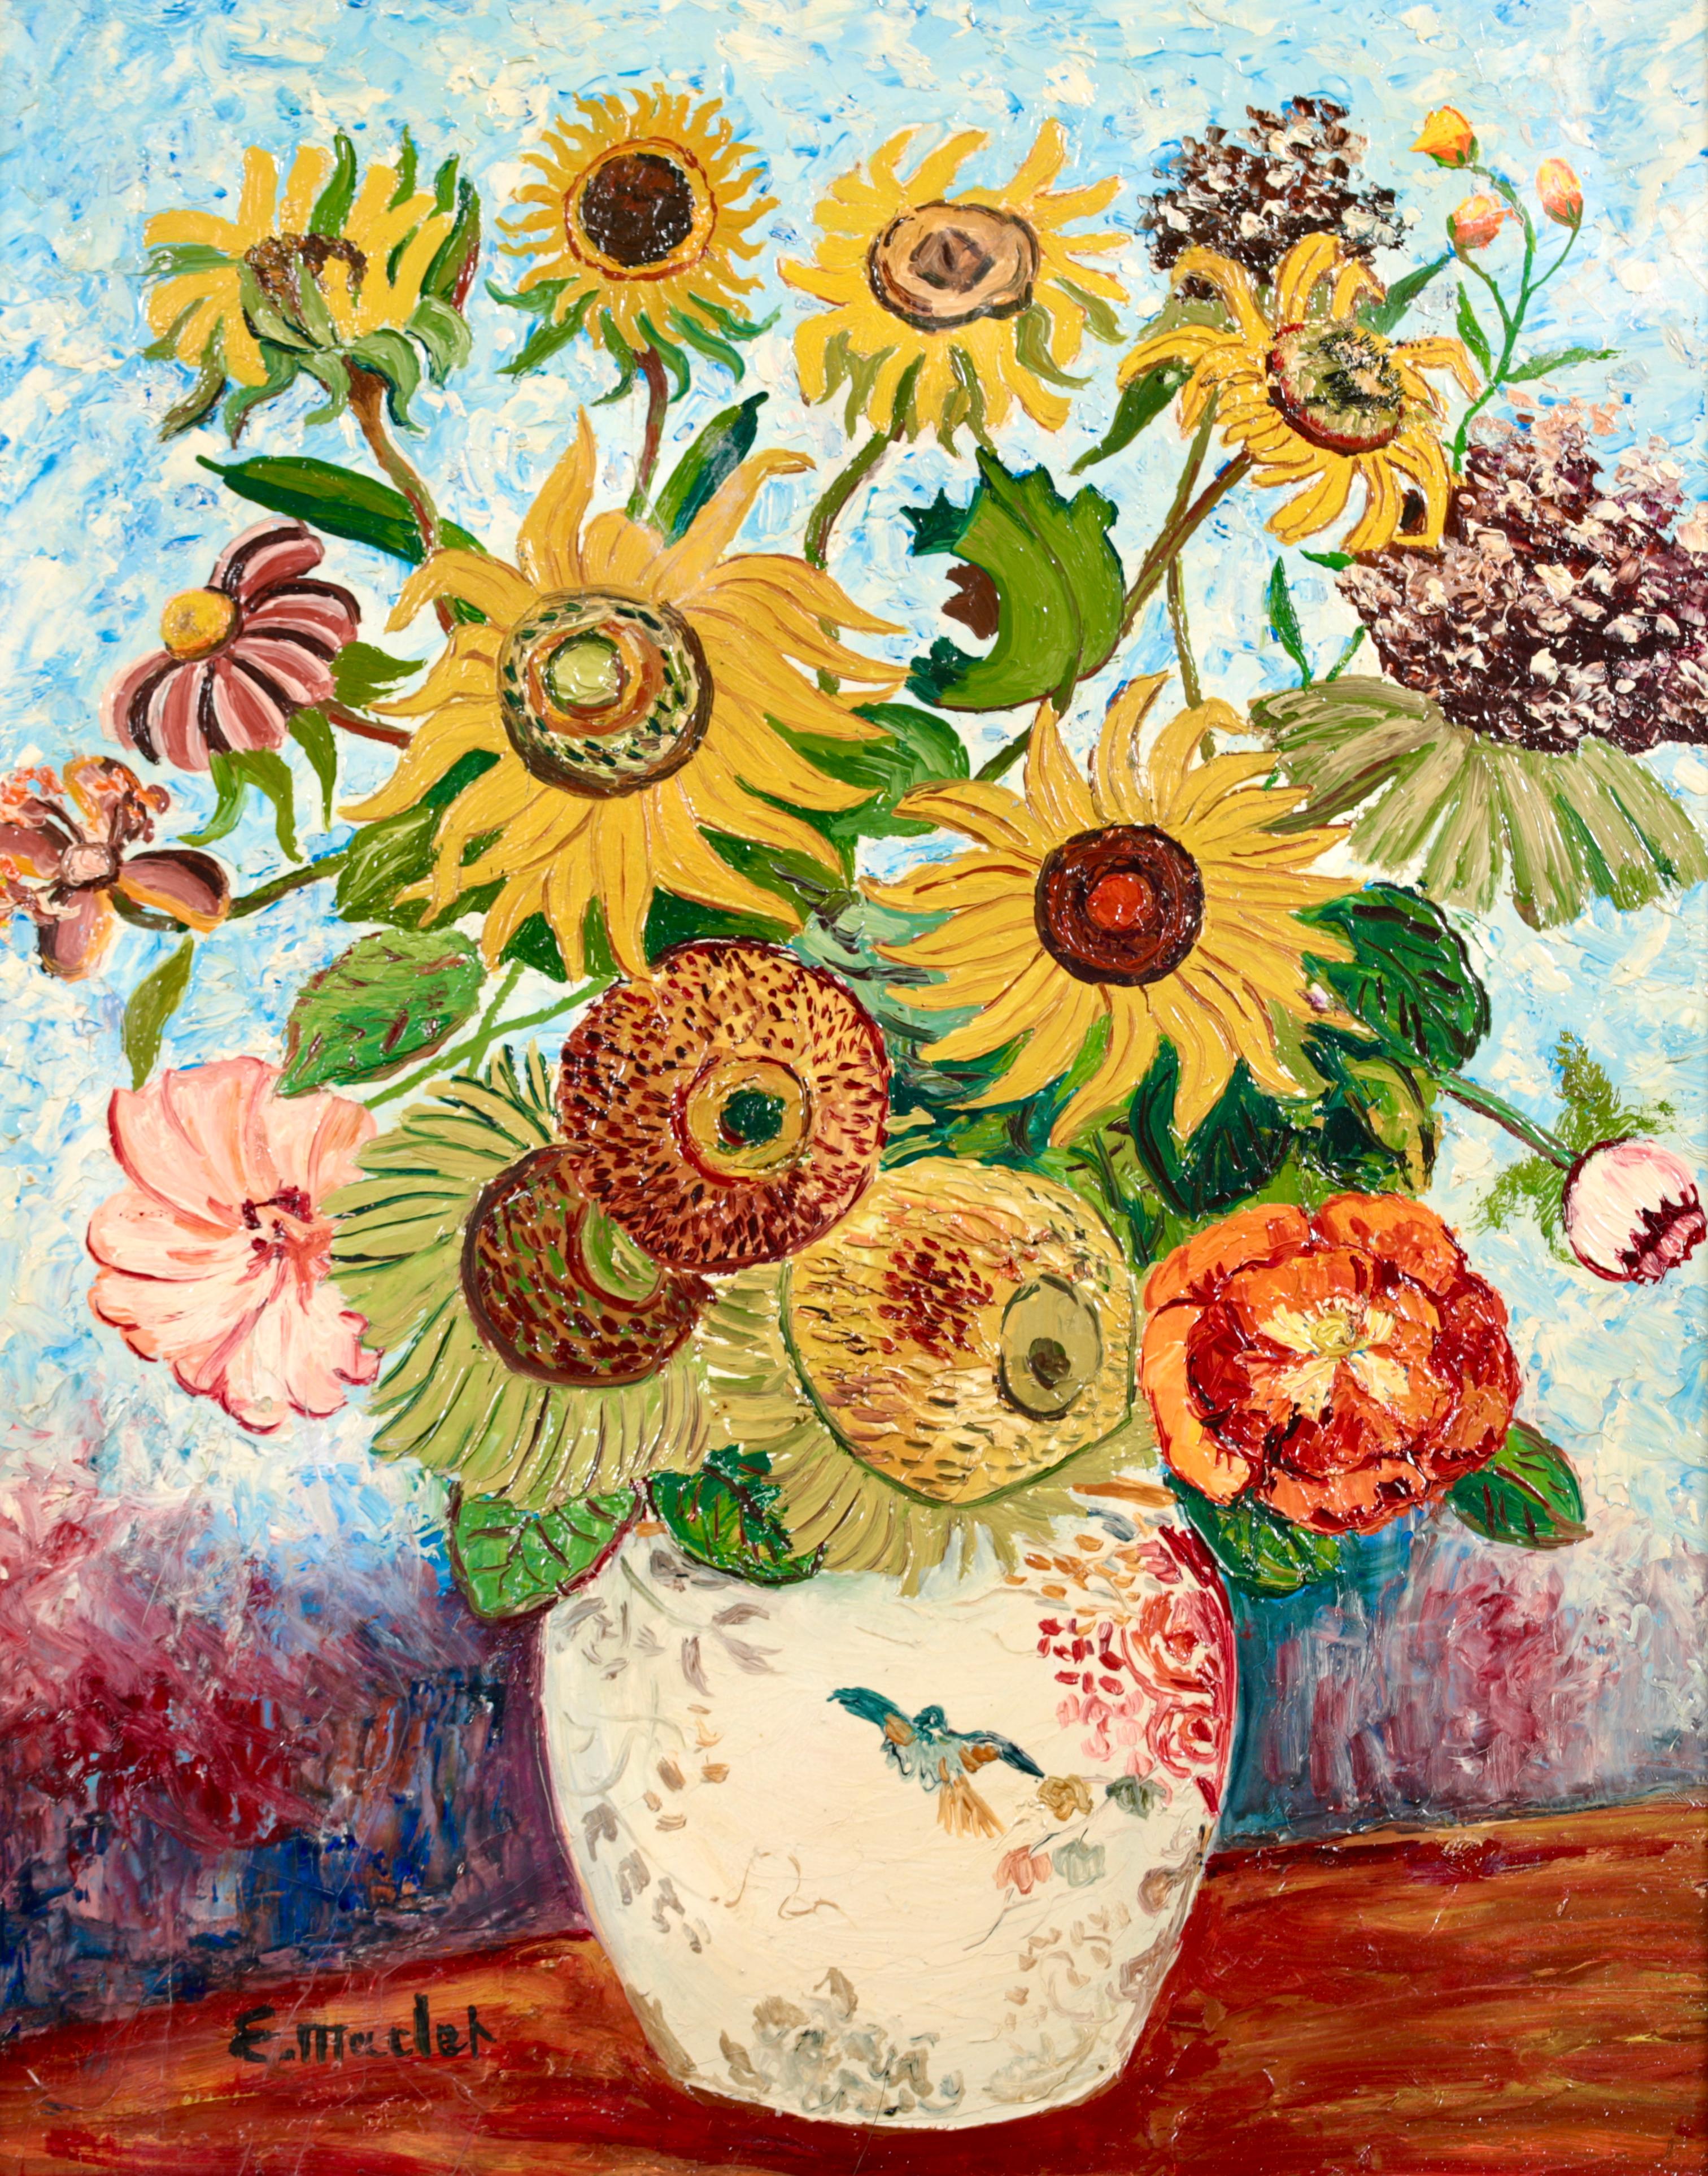 Huile impressionniste - Natures mortes - Fleurs de soleil d'Elisabeth Maclet - Painting de Elisée Maclet